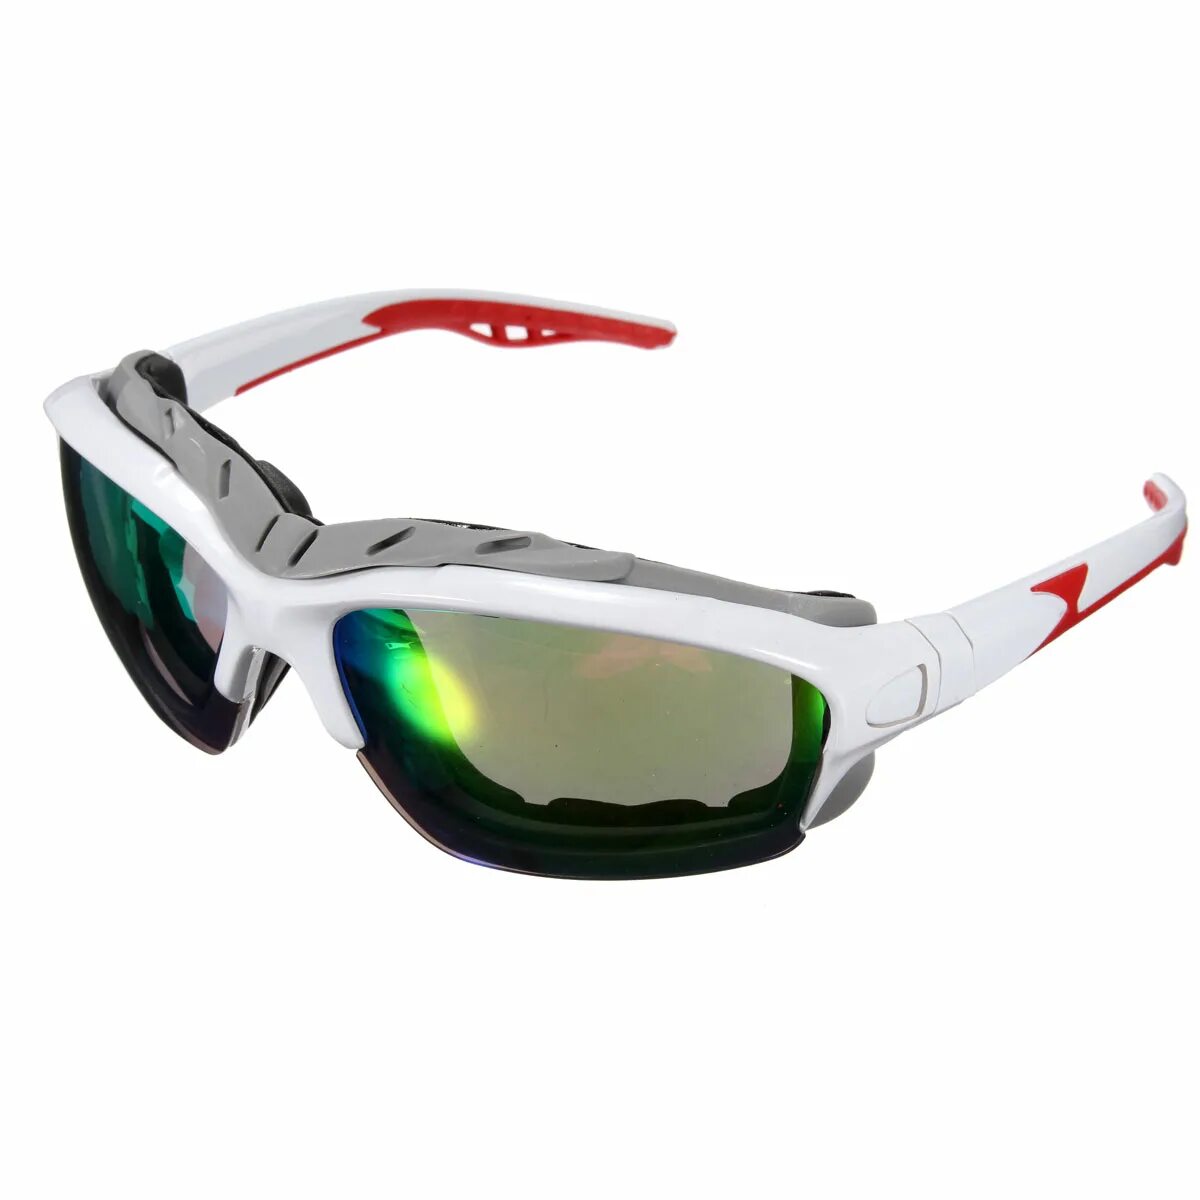 Очки спортивные солнцезащитные мужские. Очки велосипедные dfsg21b02. Dhb очки велосипедные. Спортивные солнечные очки. Спортивный.